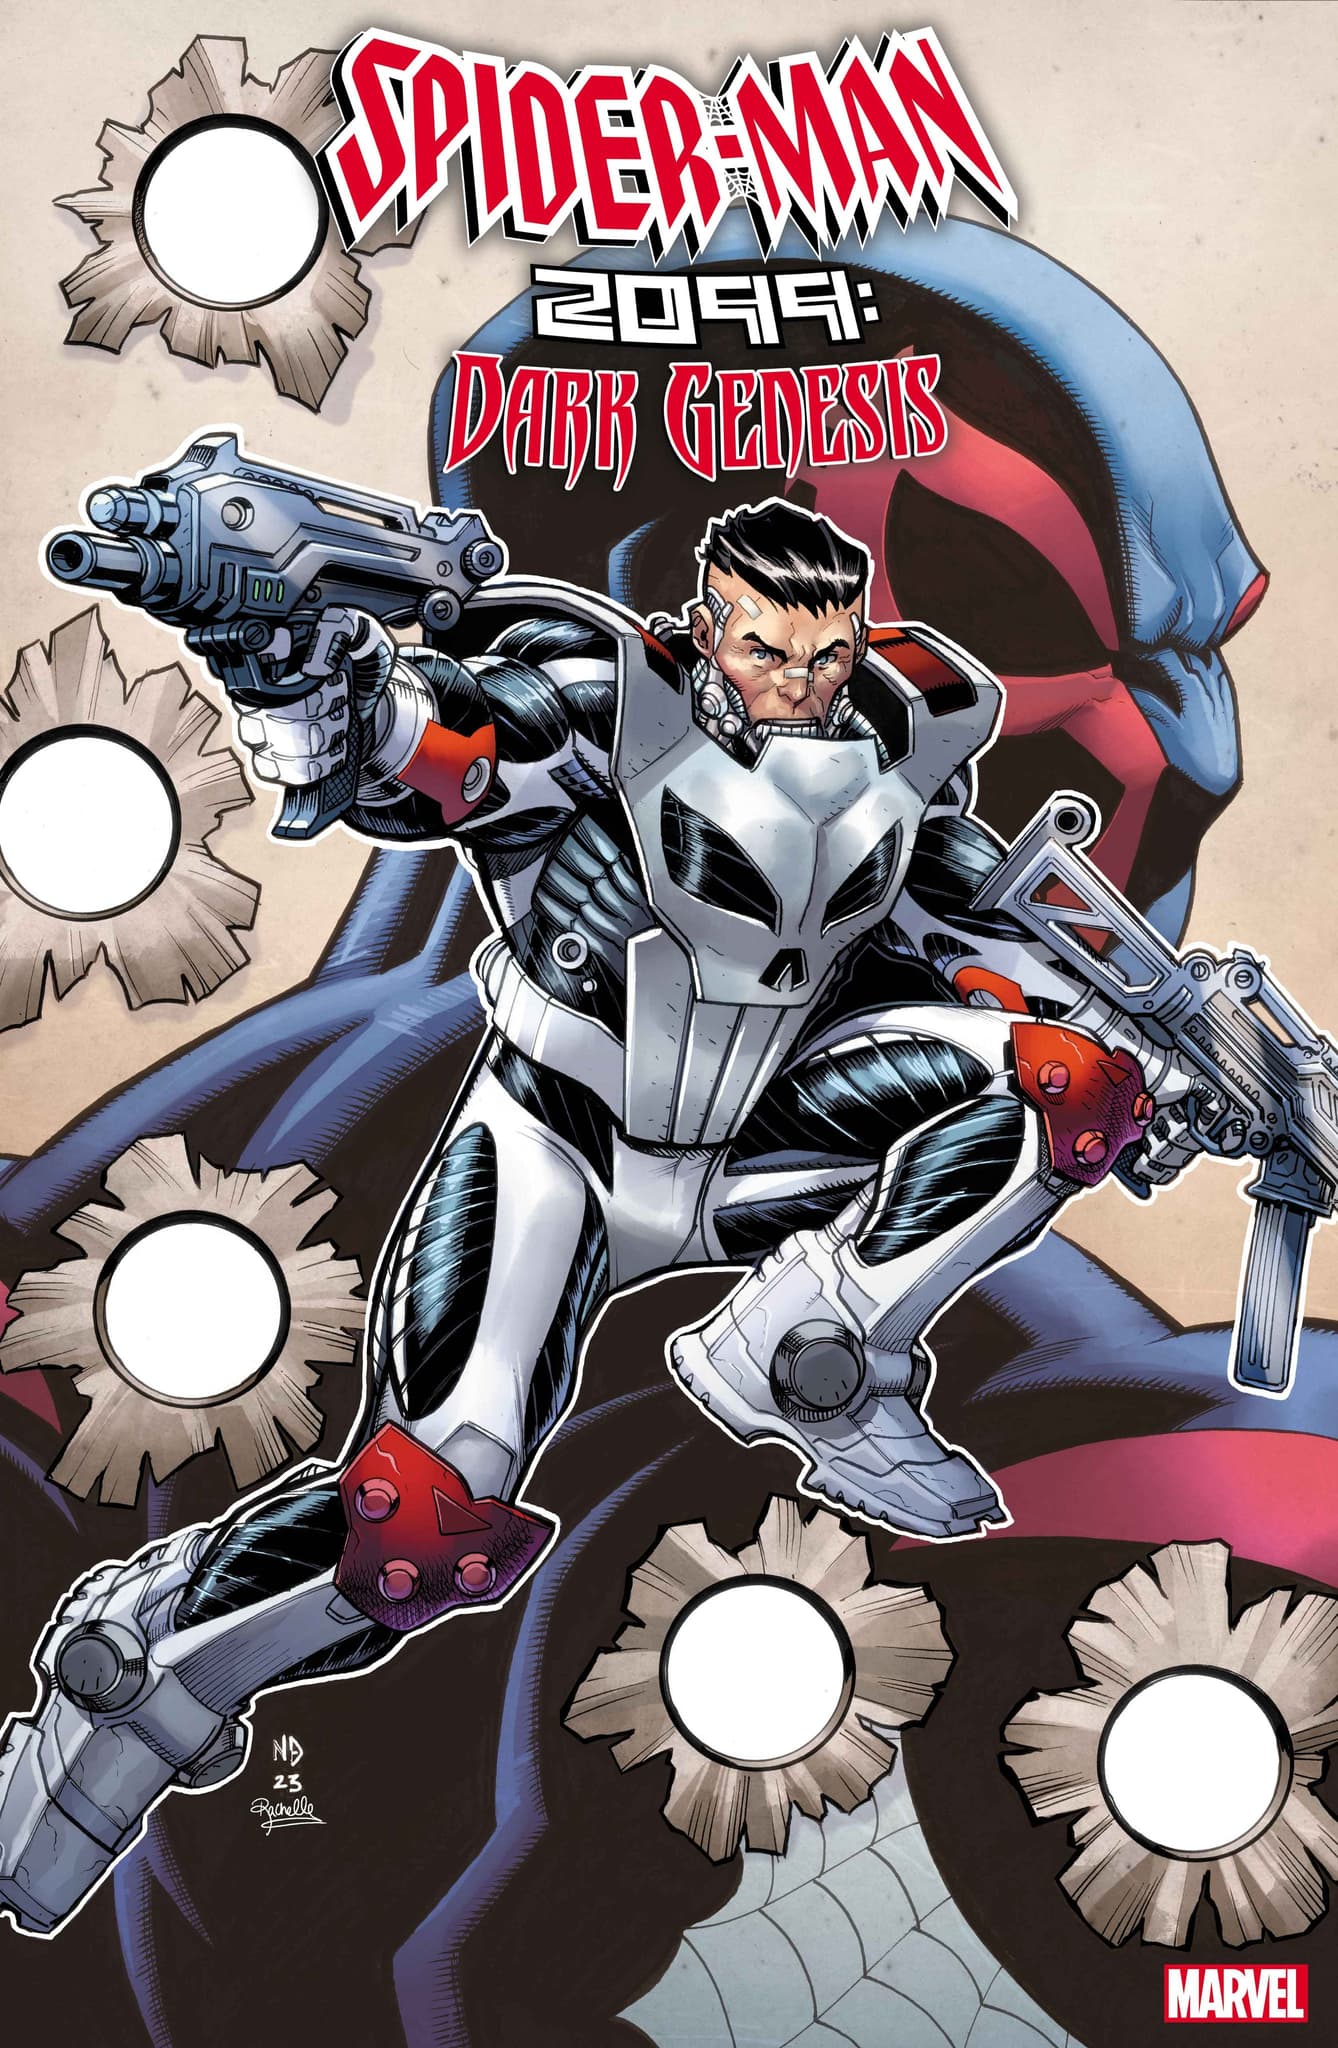 SPIDER-MAN 2099: DARK GENESIS #3 cover by Nick Bradshaw